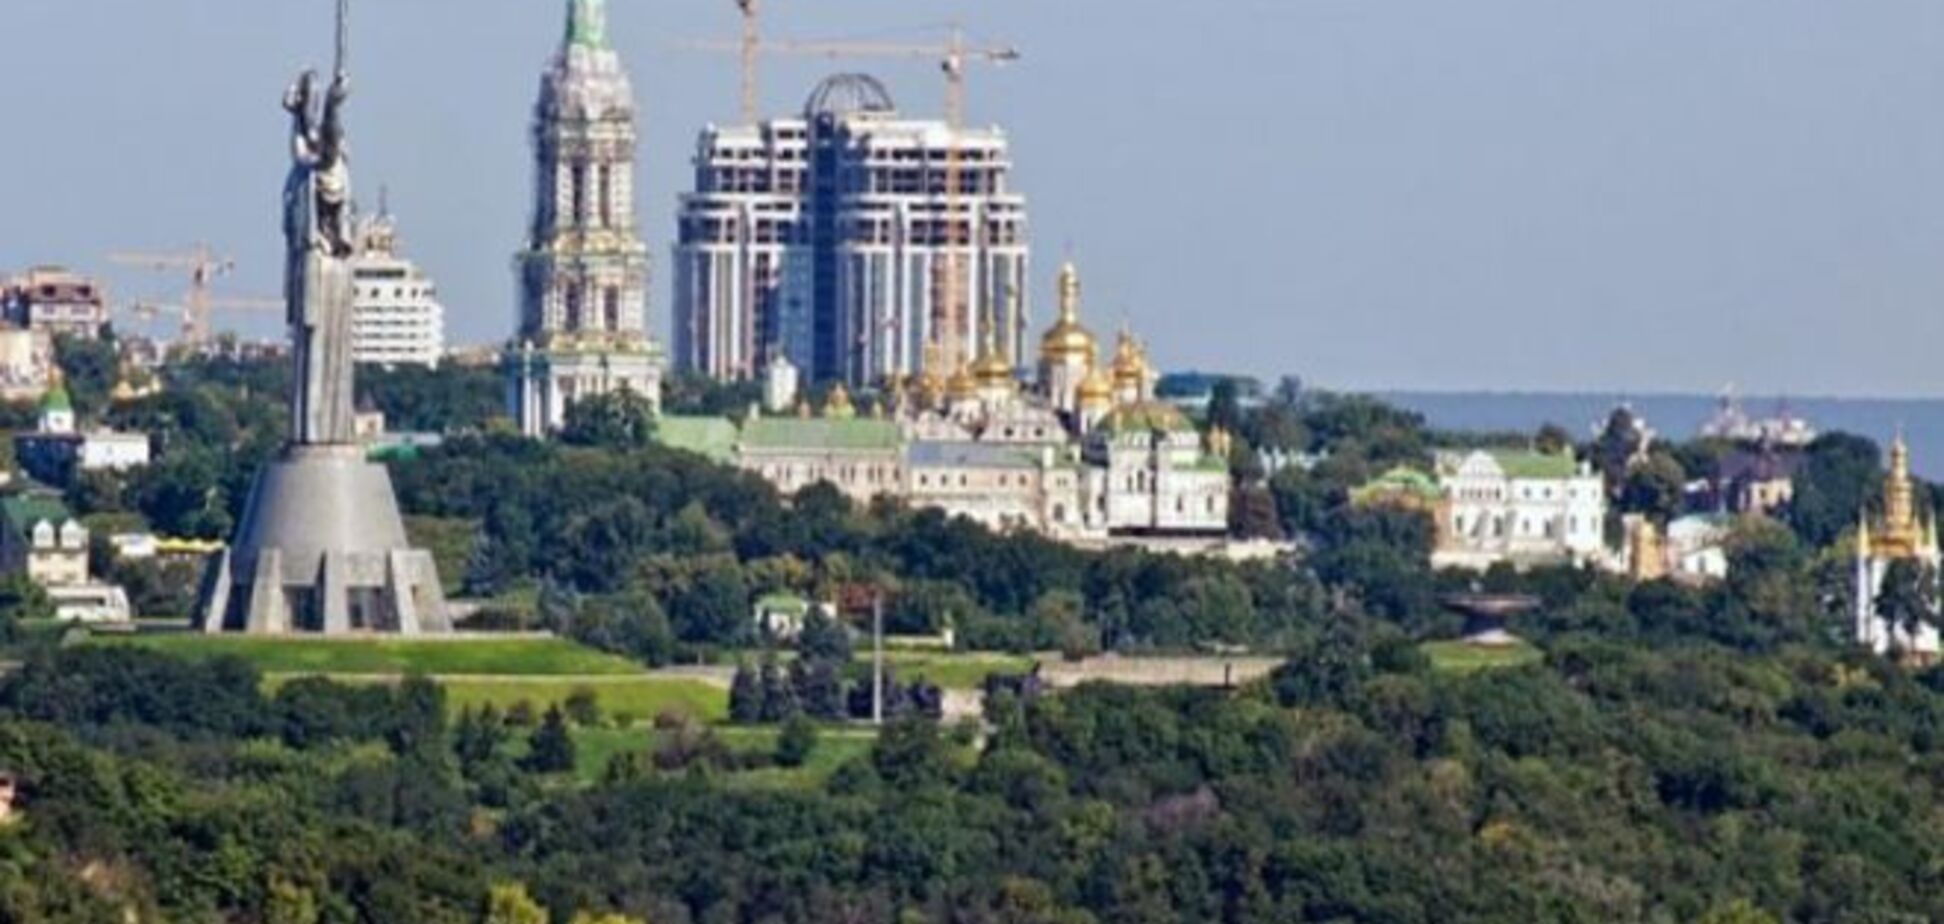 Жорстока резолюція: ЮНЕСКО вимагає знести всі незаконні будівлі в центрі Києва